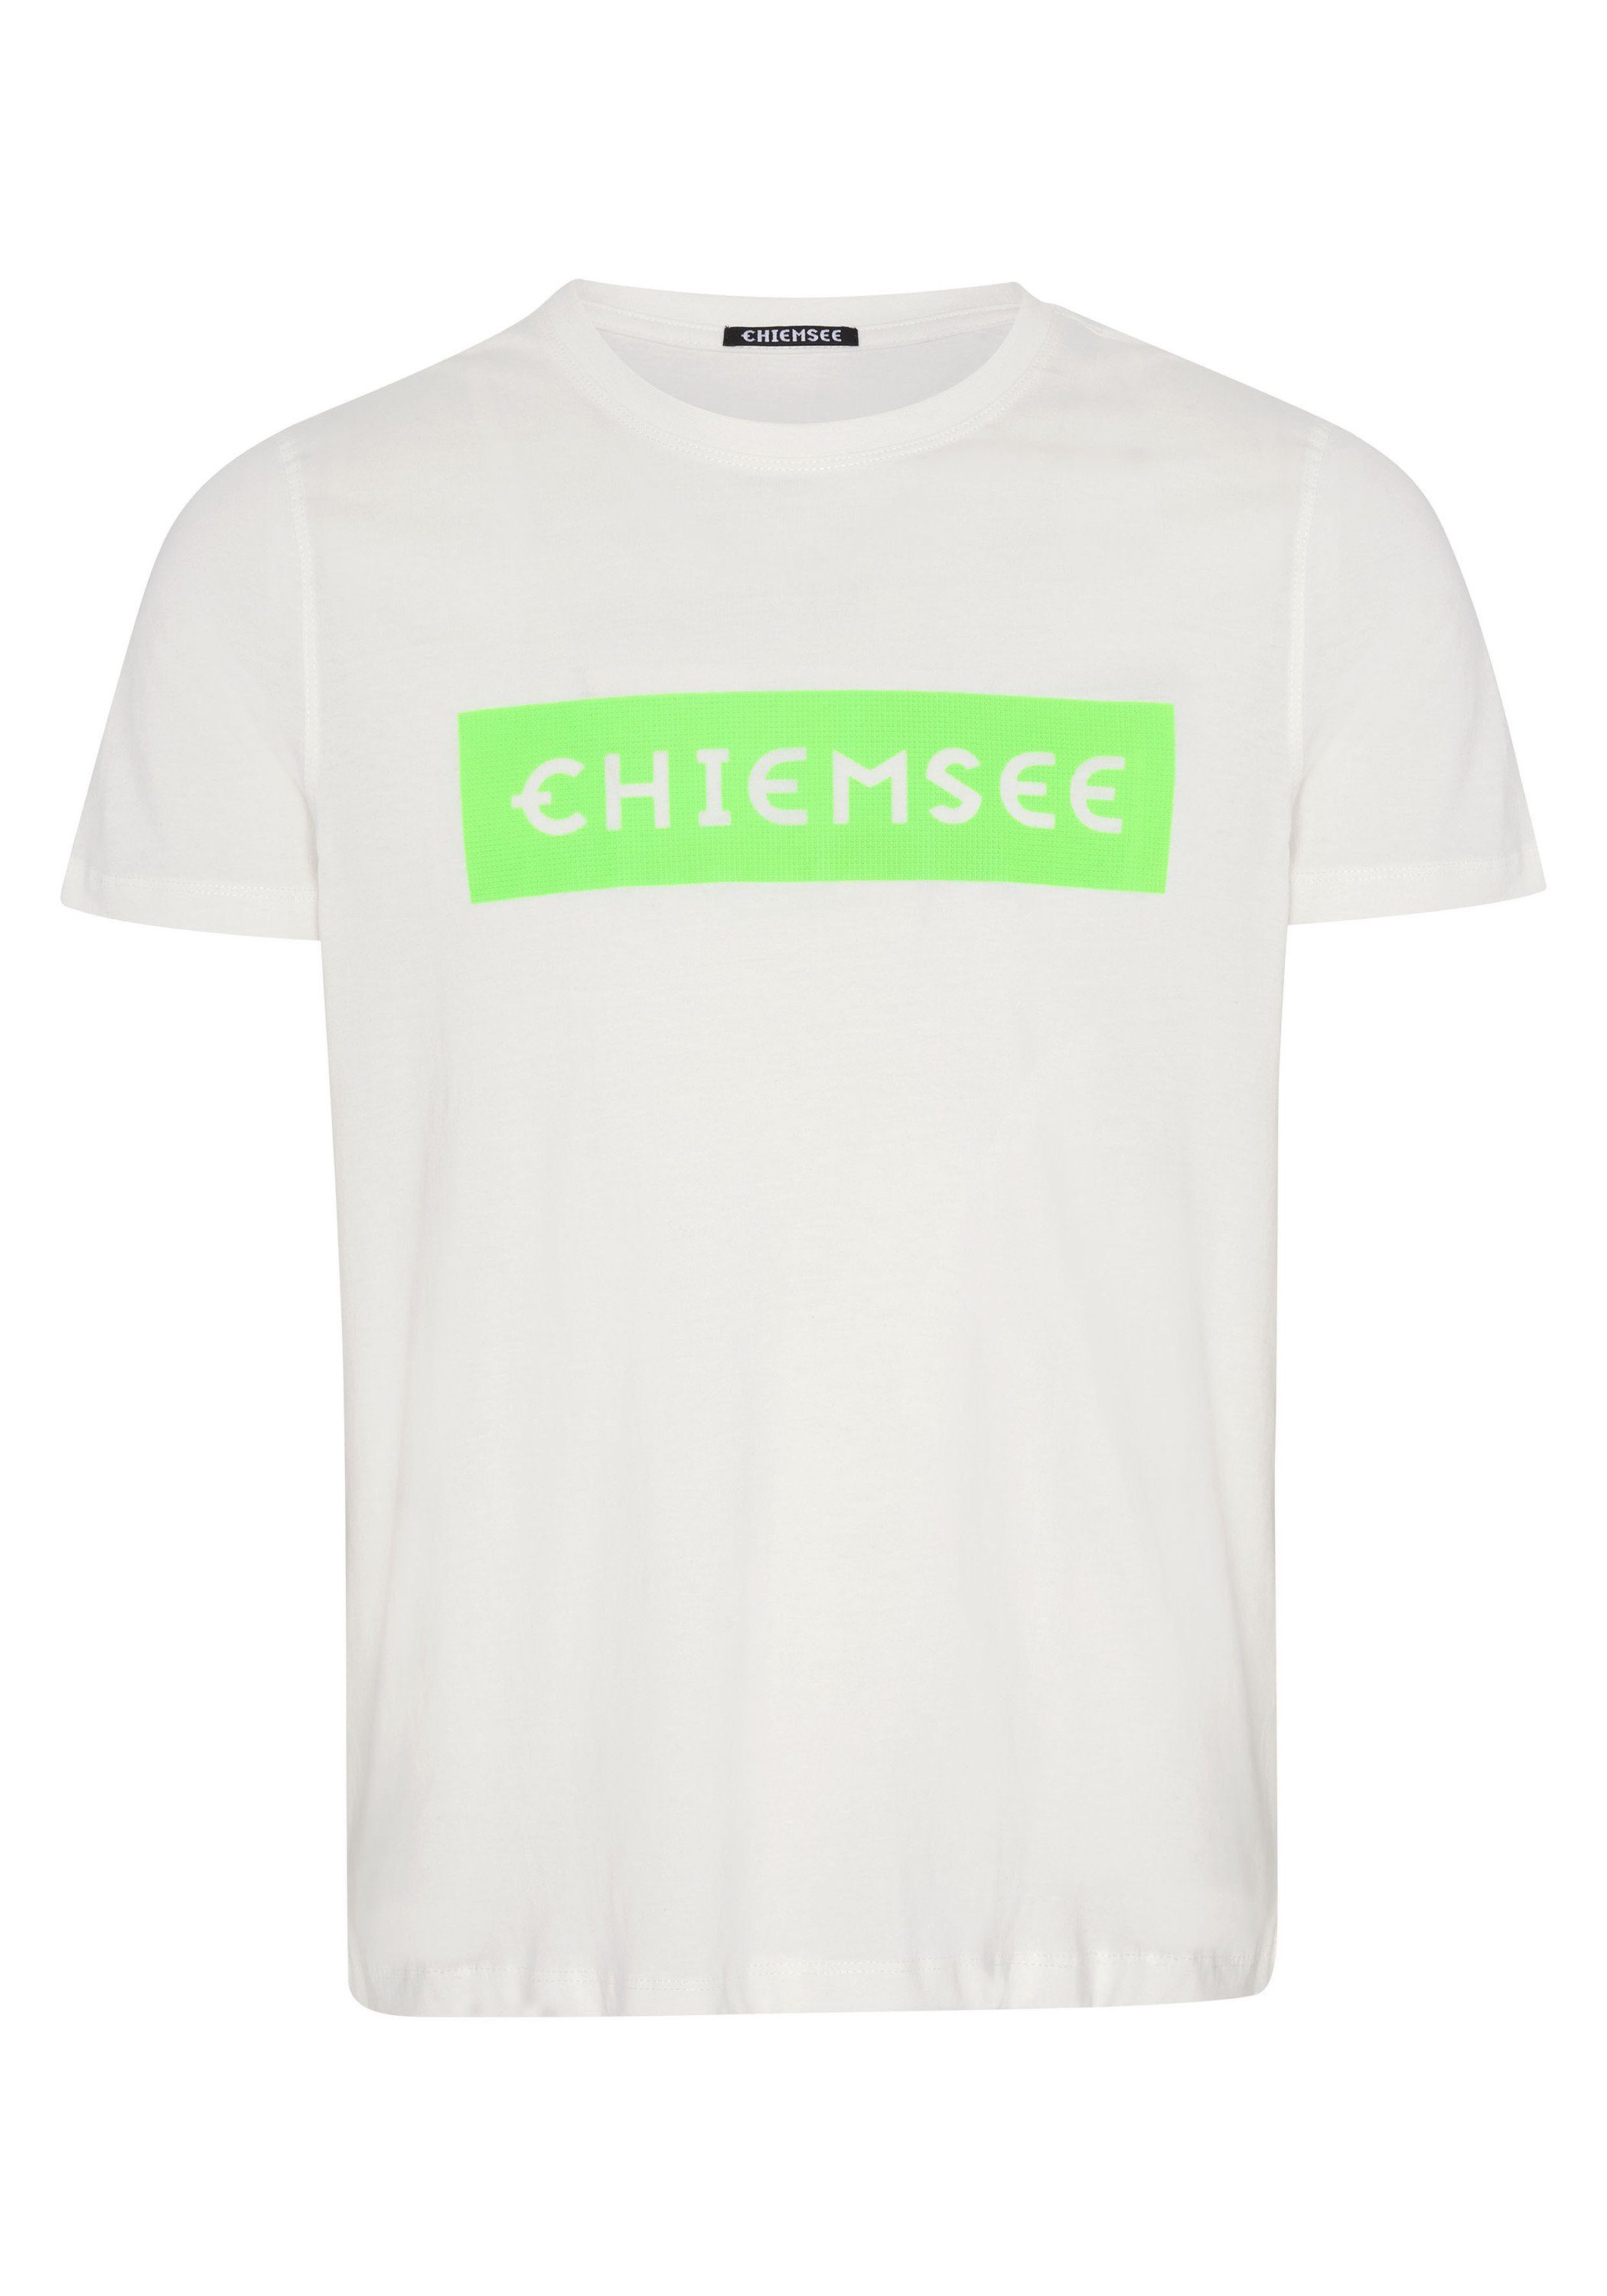 Chiemsee Print-Shirt T-Shirt mit plakativem 1 Dif Grn Markenschriftzug Wht/Md